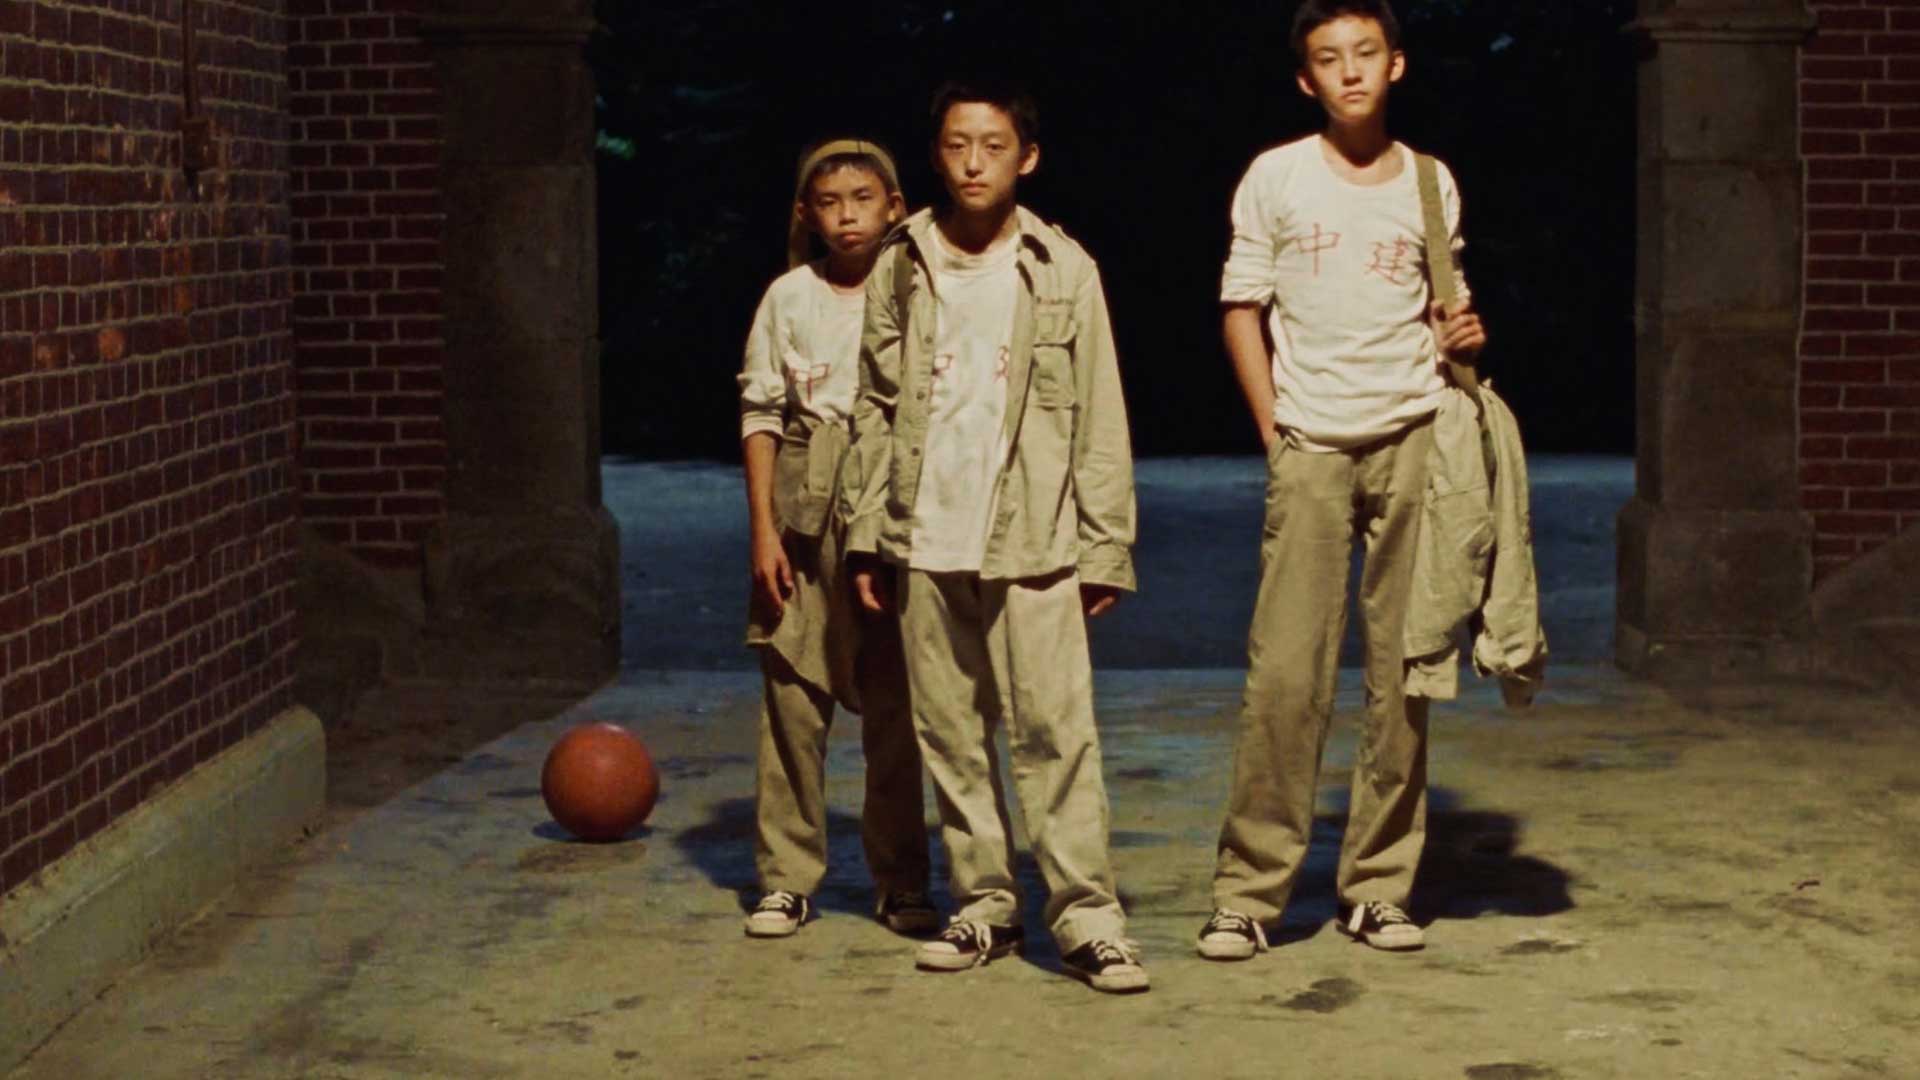 بچه و نوجوان کنار هم داخل کوچه با یک توپ در فیلم A Brighter Summer Day سینما کشور تایوان